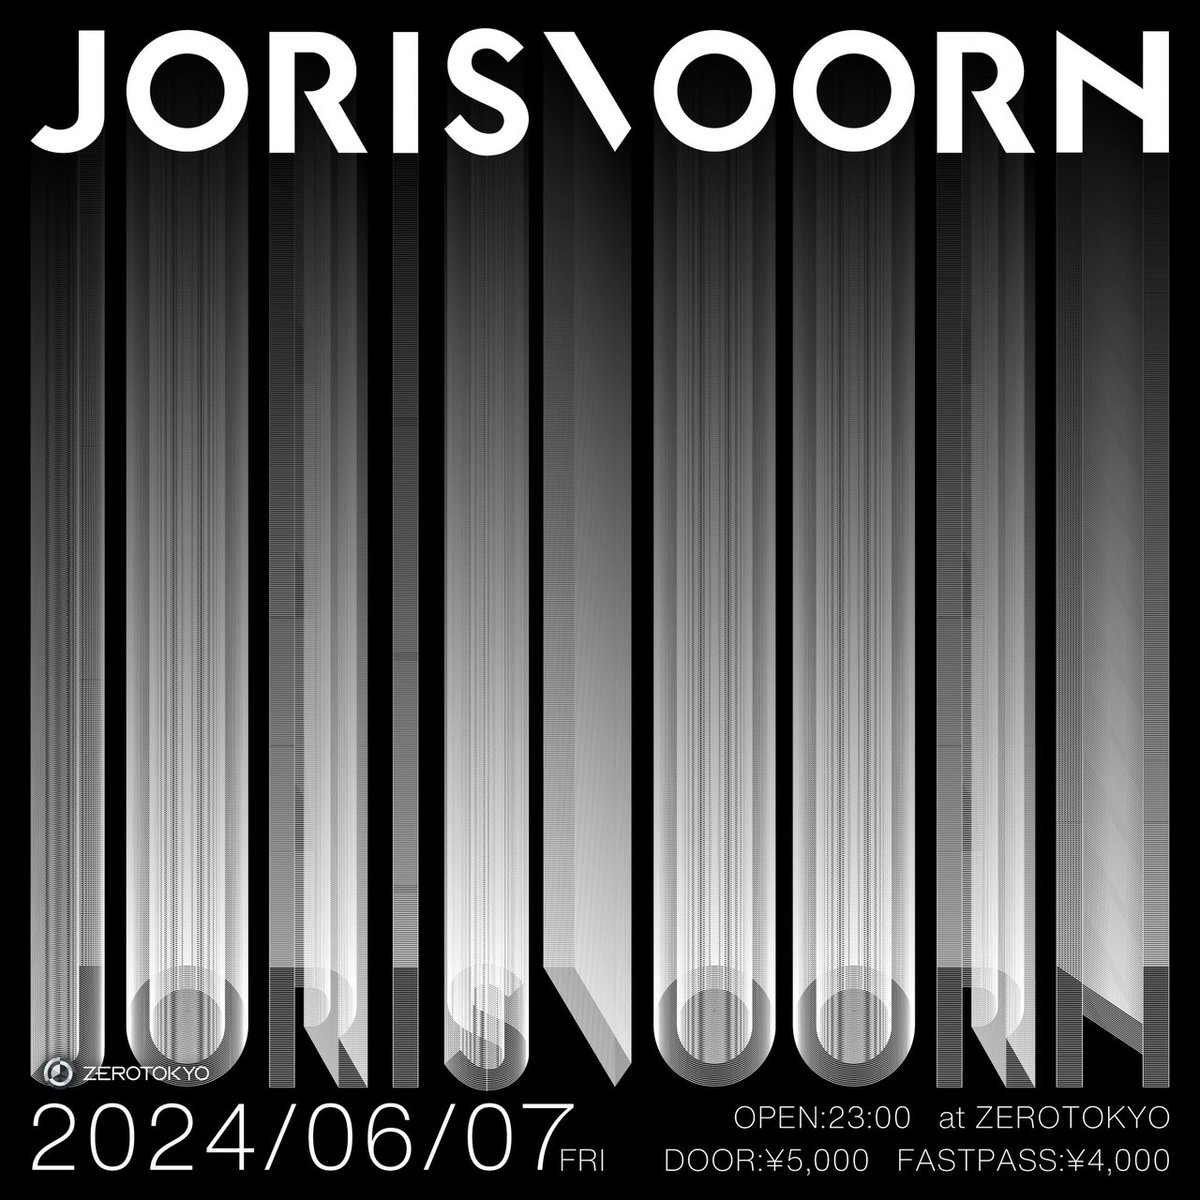 🔥来日公演決定🔥 テクノ、メロディックハウスシーンの雄 Joris Voornを深掘り👀 block.fm/news/jorisvoor… テクノ、メロディックハウス好きは必見!Joris Voornの来日公演がZEROTOKYOで決定した。なんと、3時間のロングセットが予定されており、世界最高峰のプレイが存分に堪能できる。